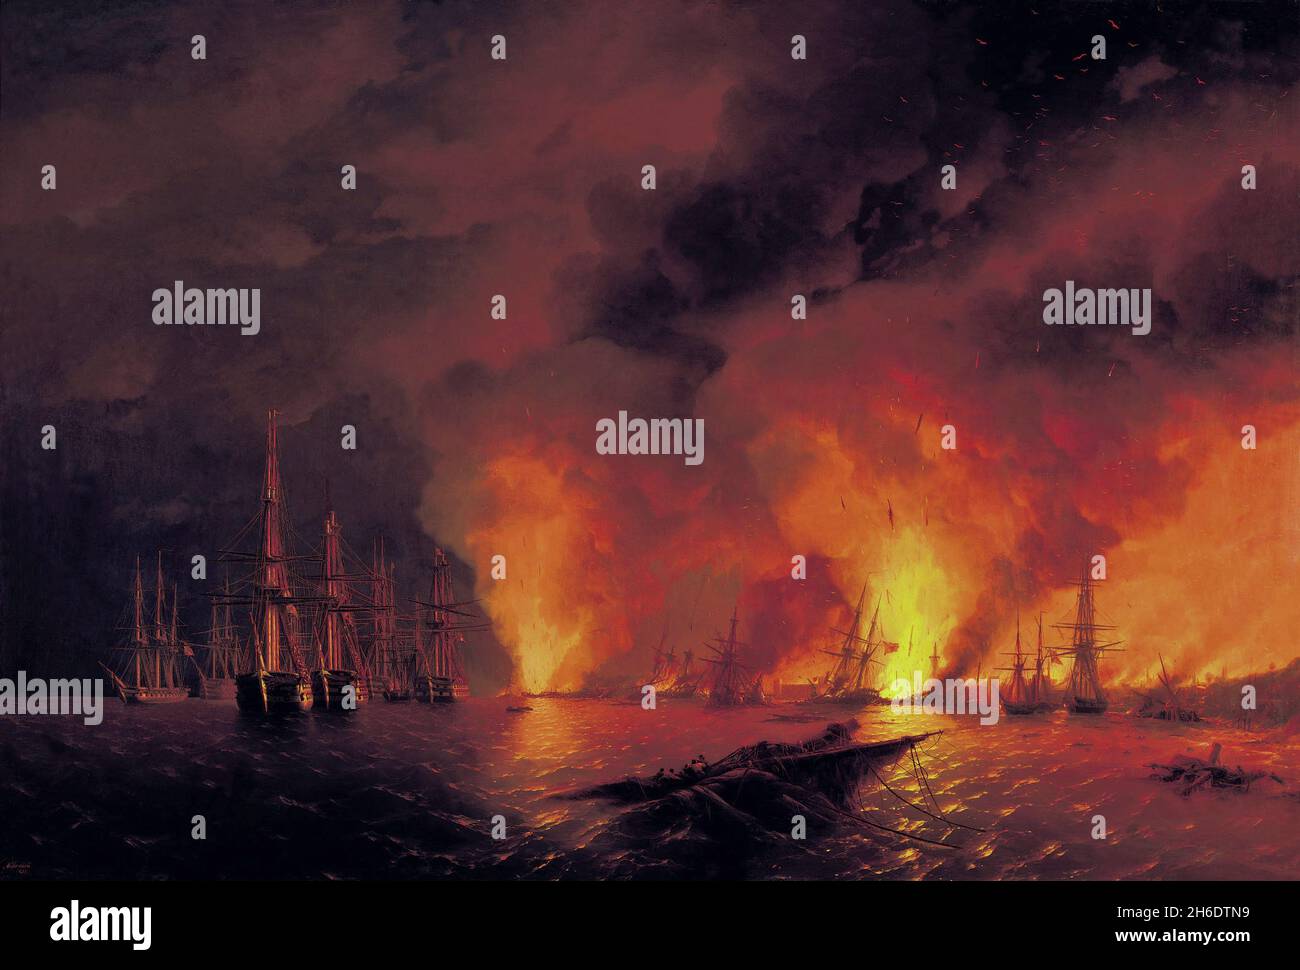 La bataille de Sinop le 18 novembre 1853 (nuit après la bataille), huile sur toile, Ivan Konstantinovič Ajvazovskij (peintre romantique russo-arménien, 1817–1900), un épisode de la guerre de Crimée de 1853-1856.La bataille de Sinop a eu lieu le 18 novembre 1853 dans l'ancien style (30 novembre) entre les escadrons russes et turcs dans le port turc de Sinop, près de la côte sud de la mer Noire.Elle s'est terminée par la destruction de 15 des 16 navires turcs et un incendie dévastateur dans la ville.La flotte russe n'a perdu aucun navire.C'était la dernière grande bataille dans l'histoire des flottes de voile, et les premiers Banque D'Images